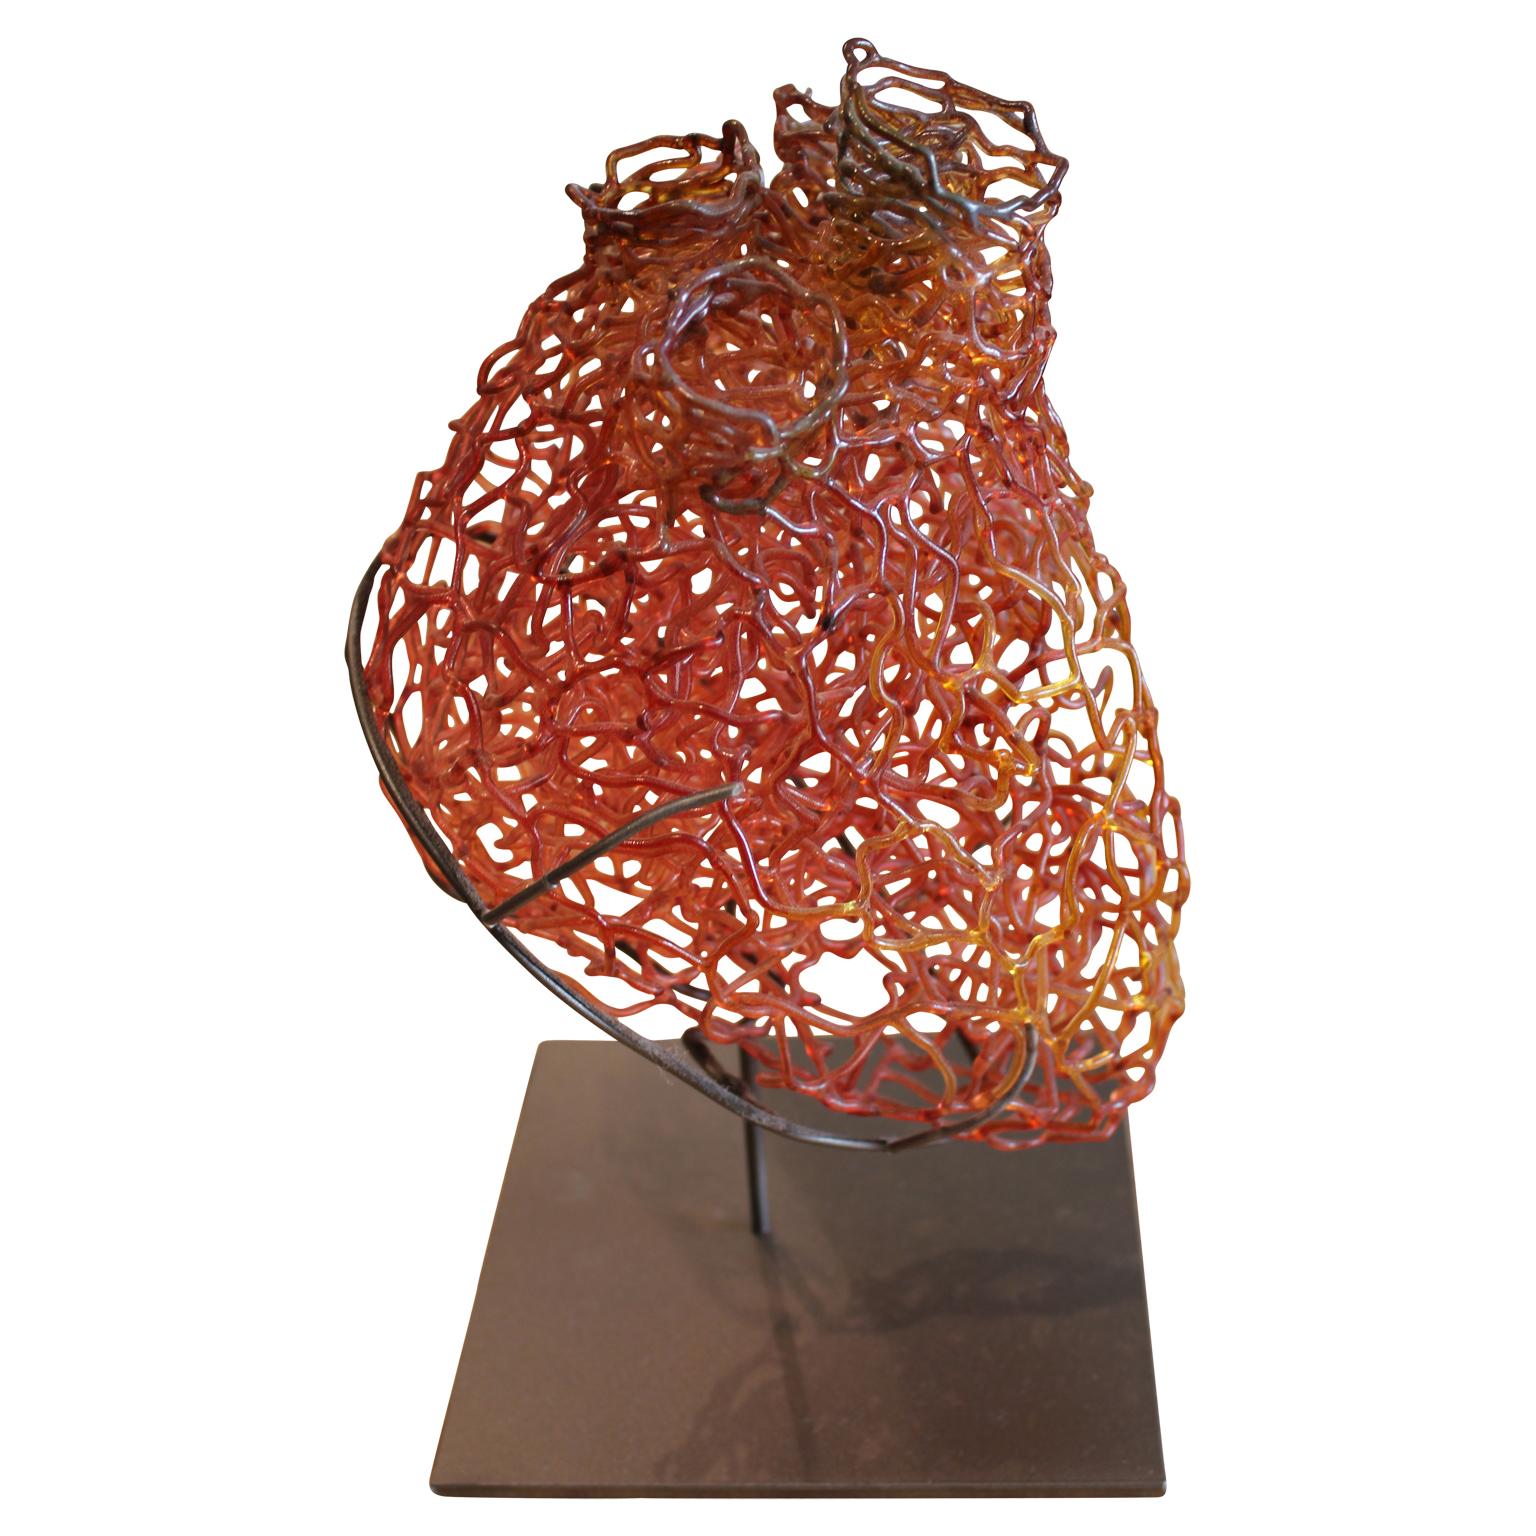 abstract heart sculpture